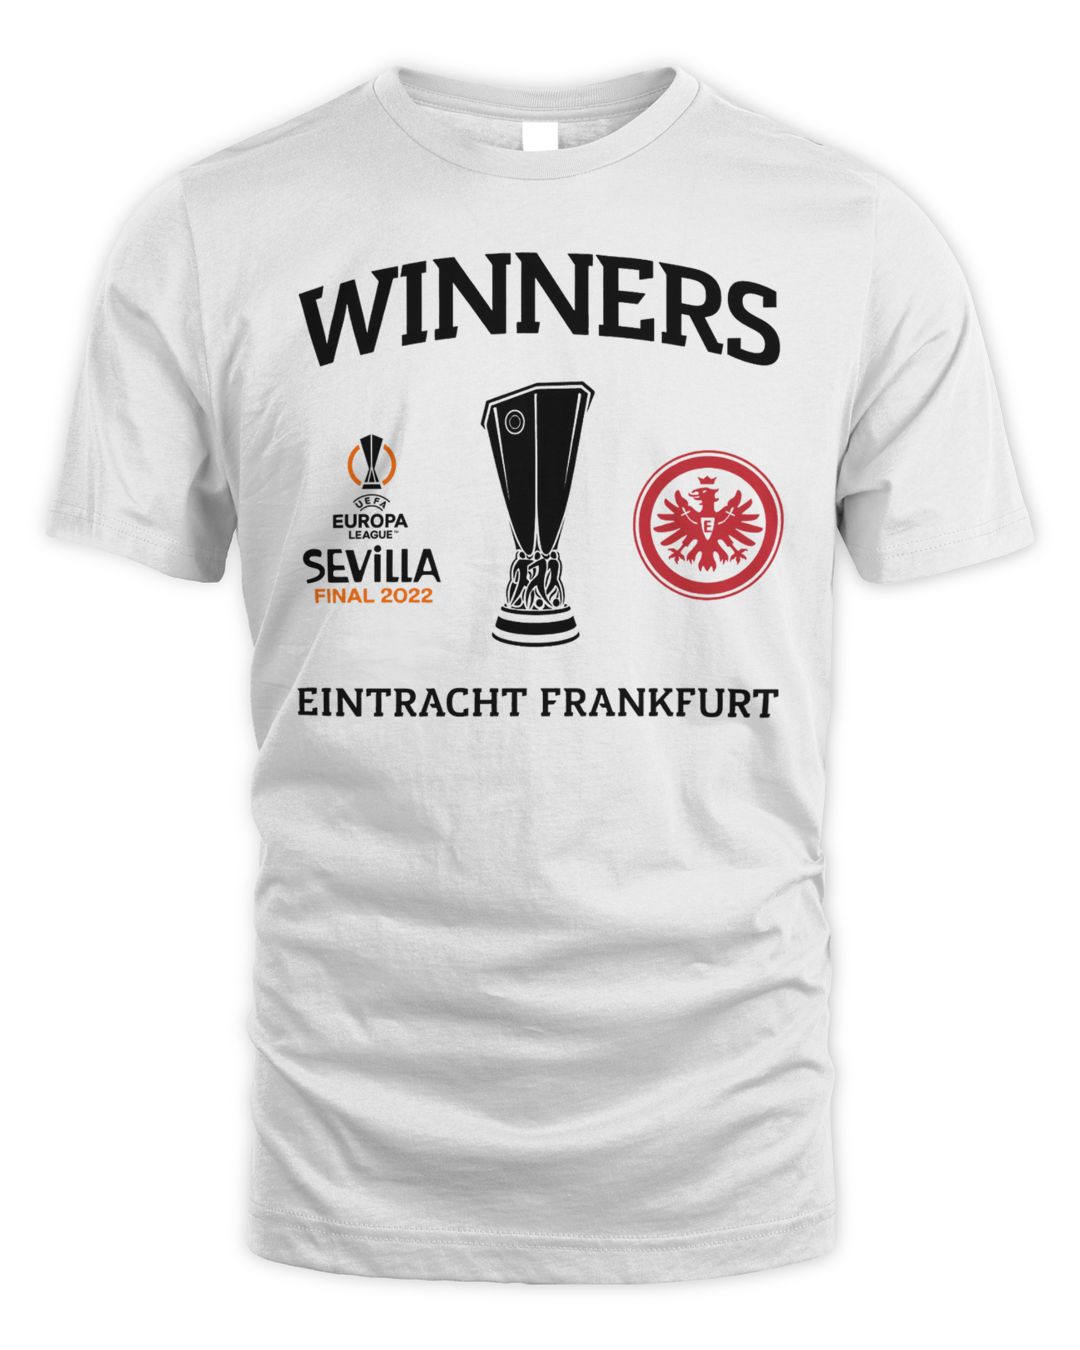 Winners Weiss 2022 Eintracht Frankfurt Shirt